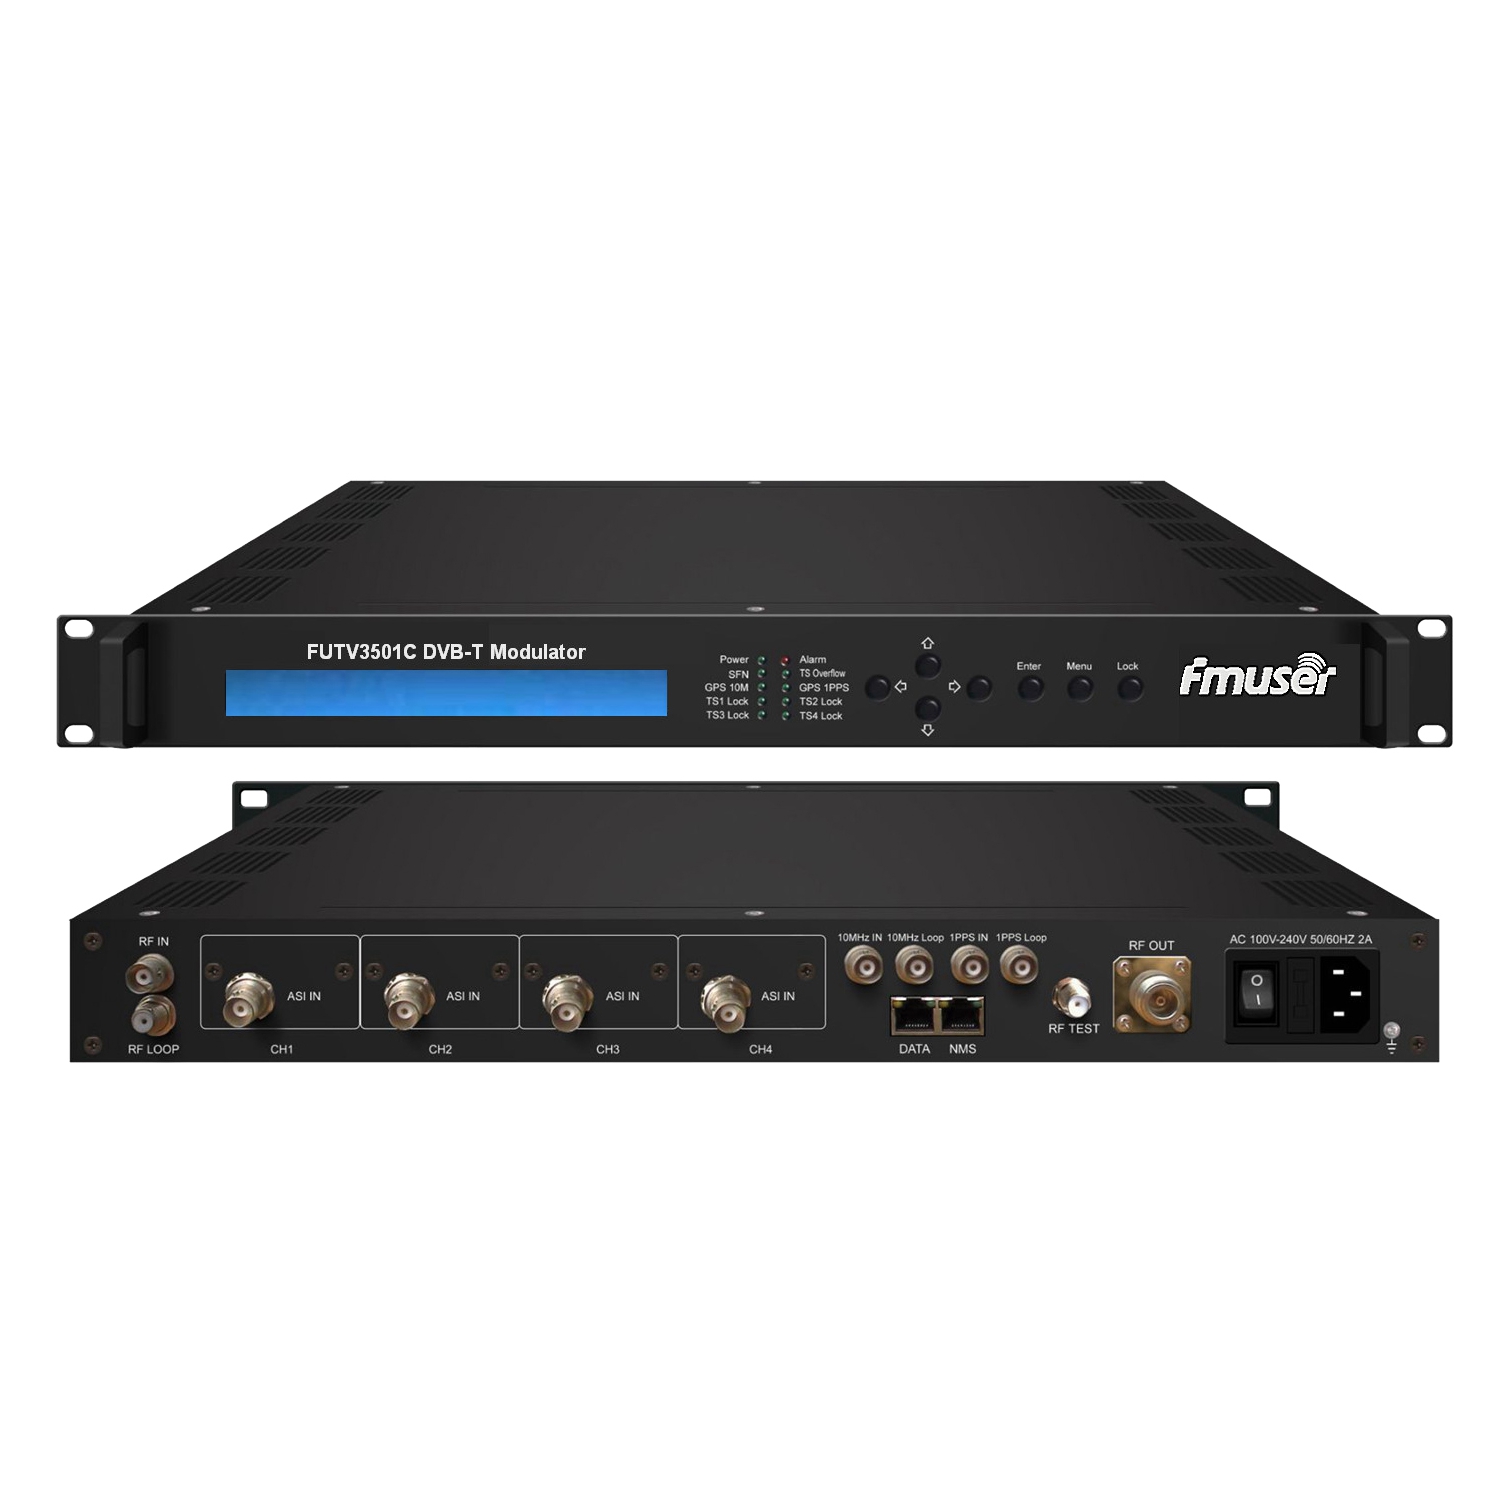 FMUSER FUTV3501C Modulador DVB-T (4 * ASI en, 1 * RF DPD cabo, DVB T-estándar) con mando a distancia